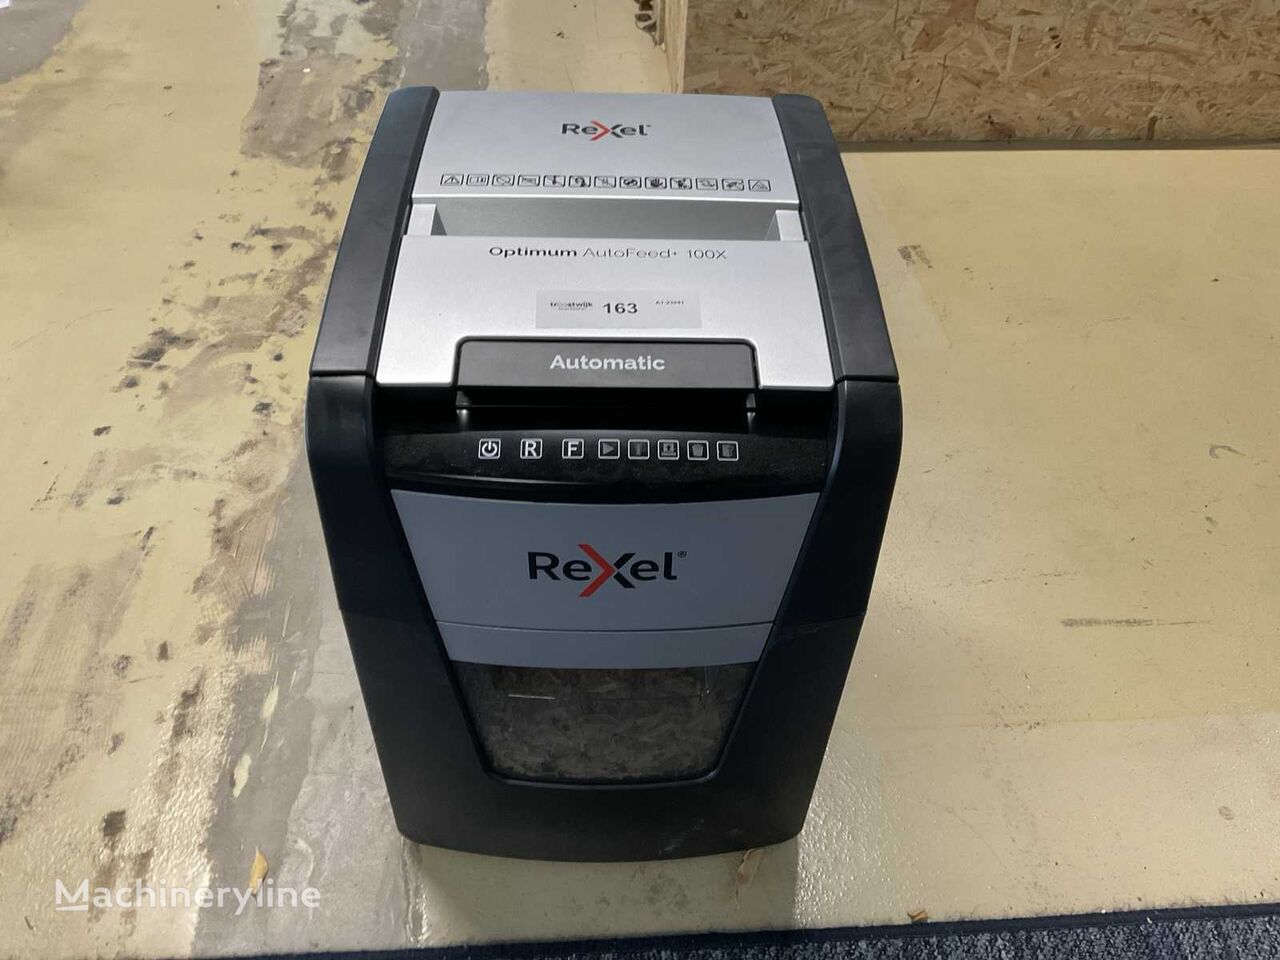 другое печатное оборудование Rexel Optimum AutoFeed+ 100X